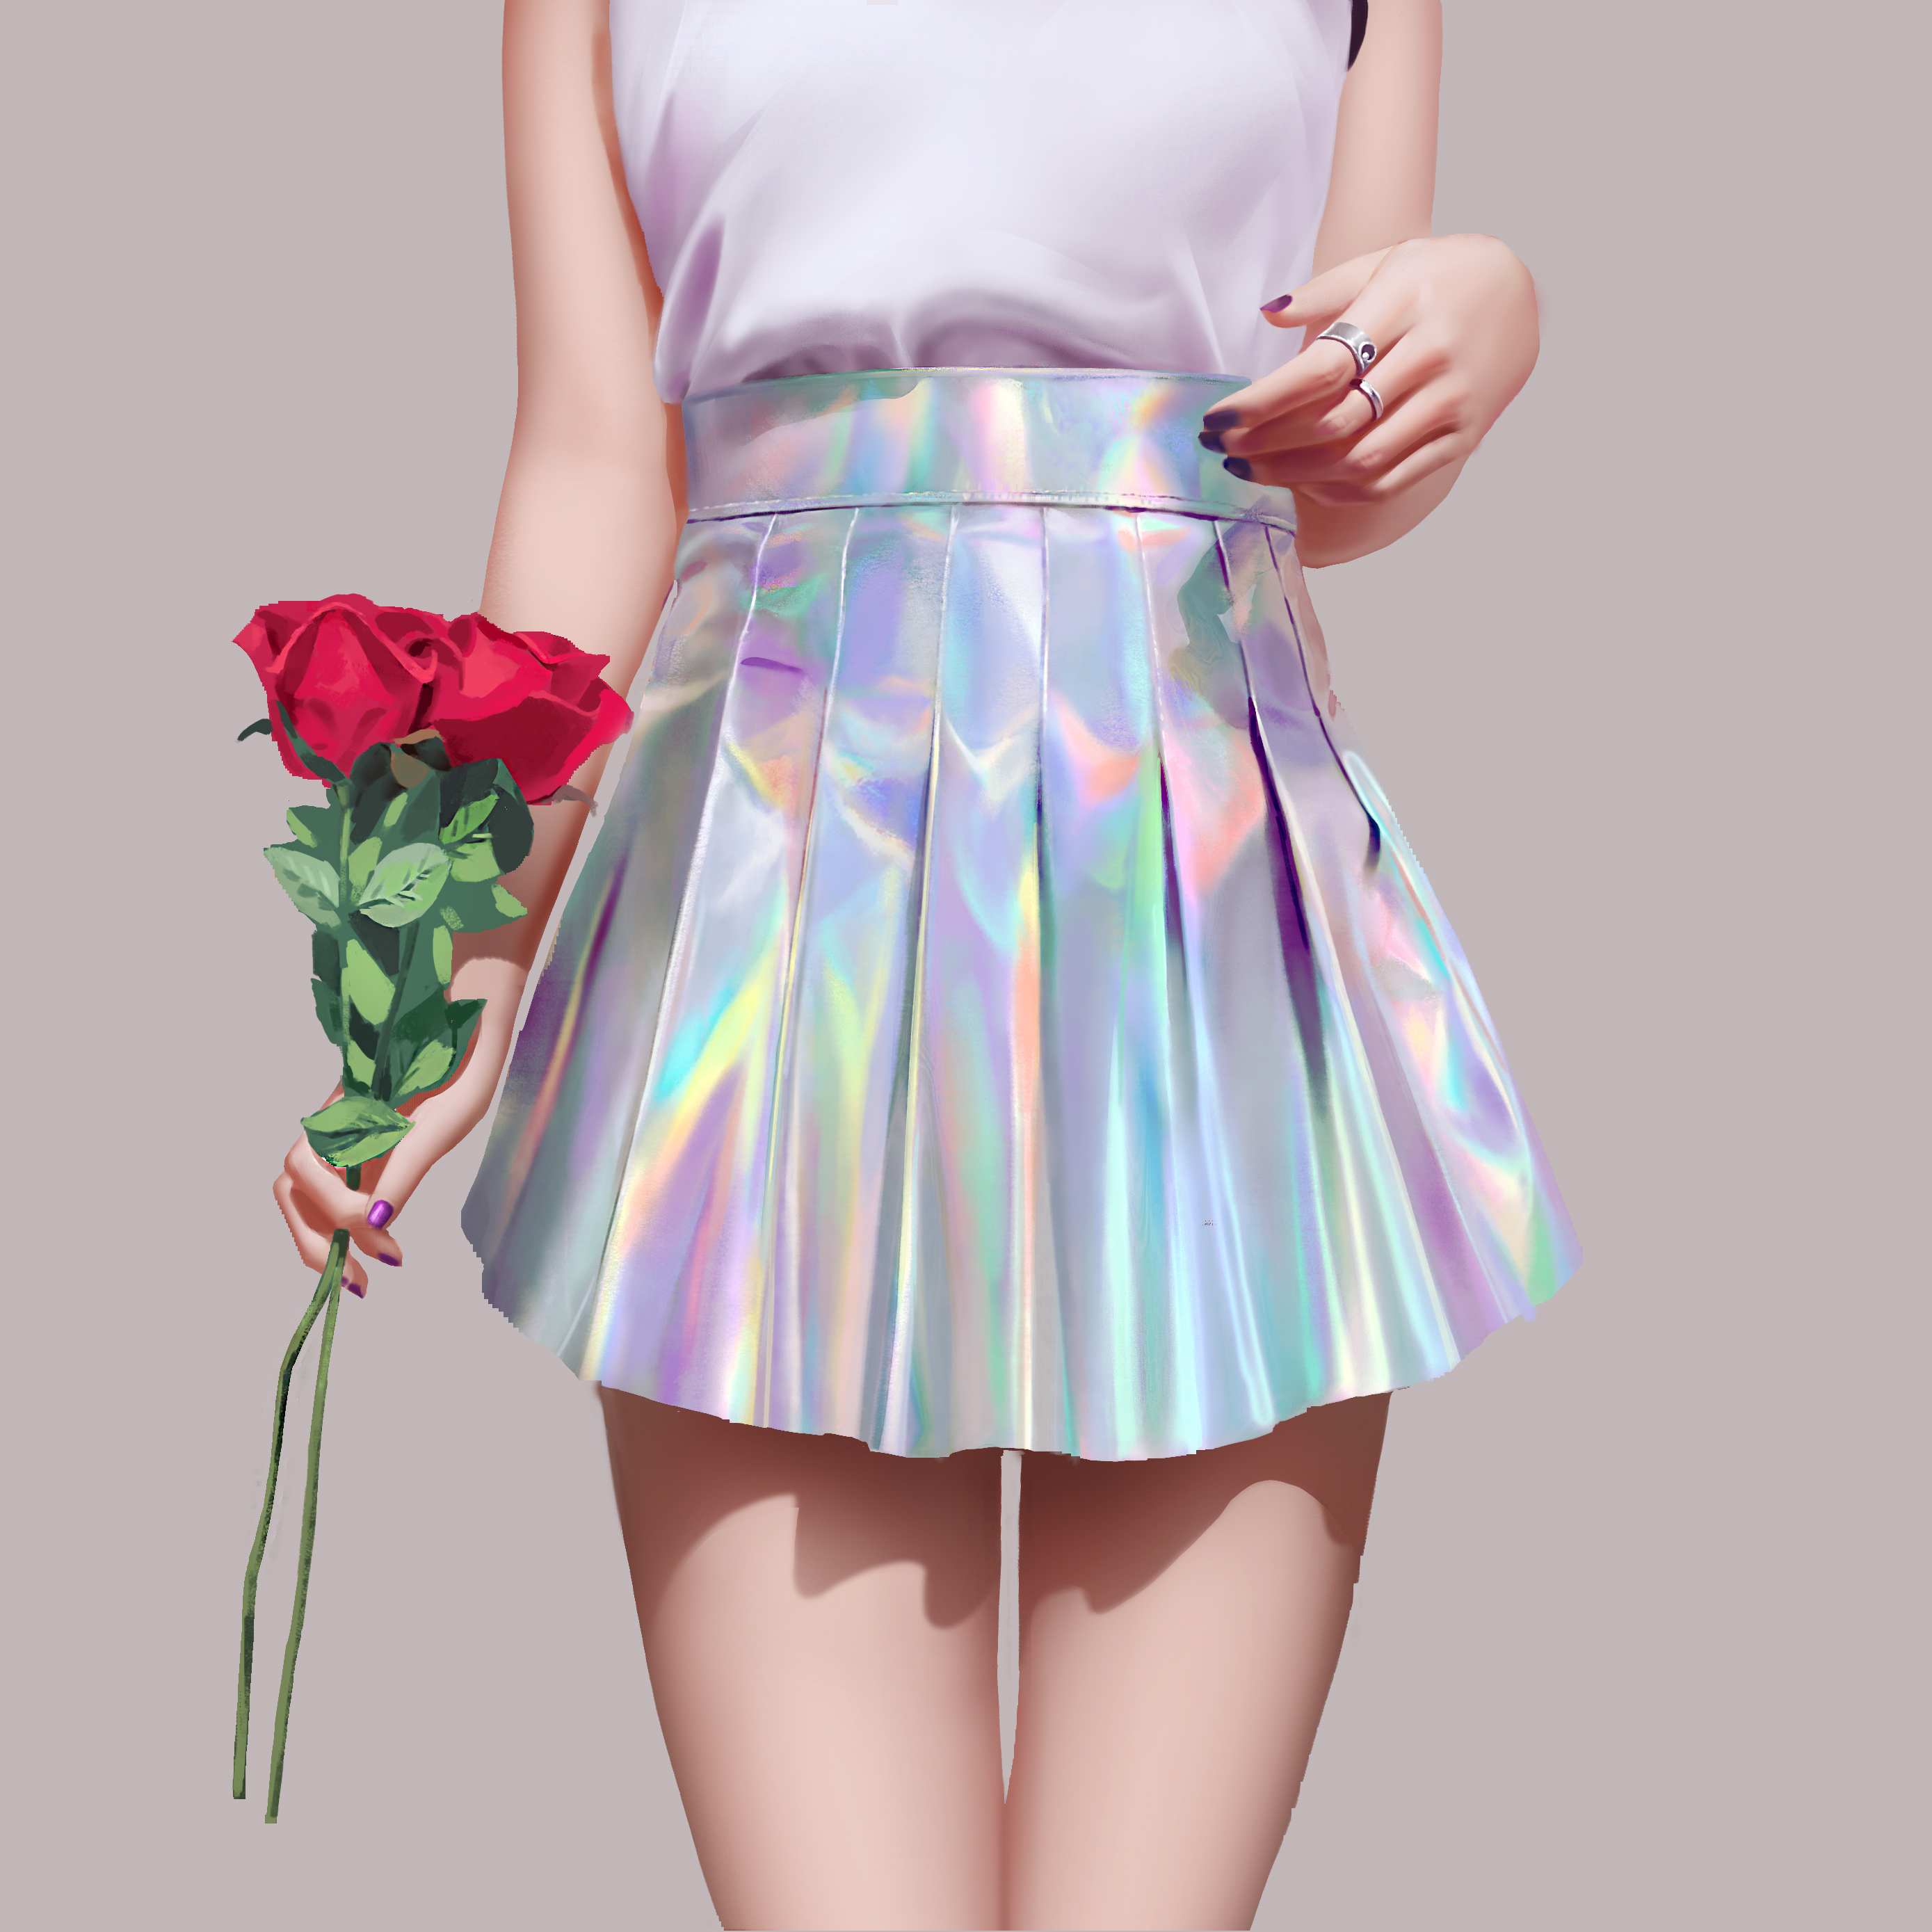 Artwork CG Flowers Skirt 2778x2778